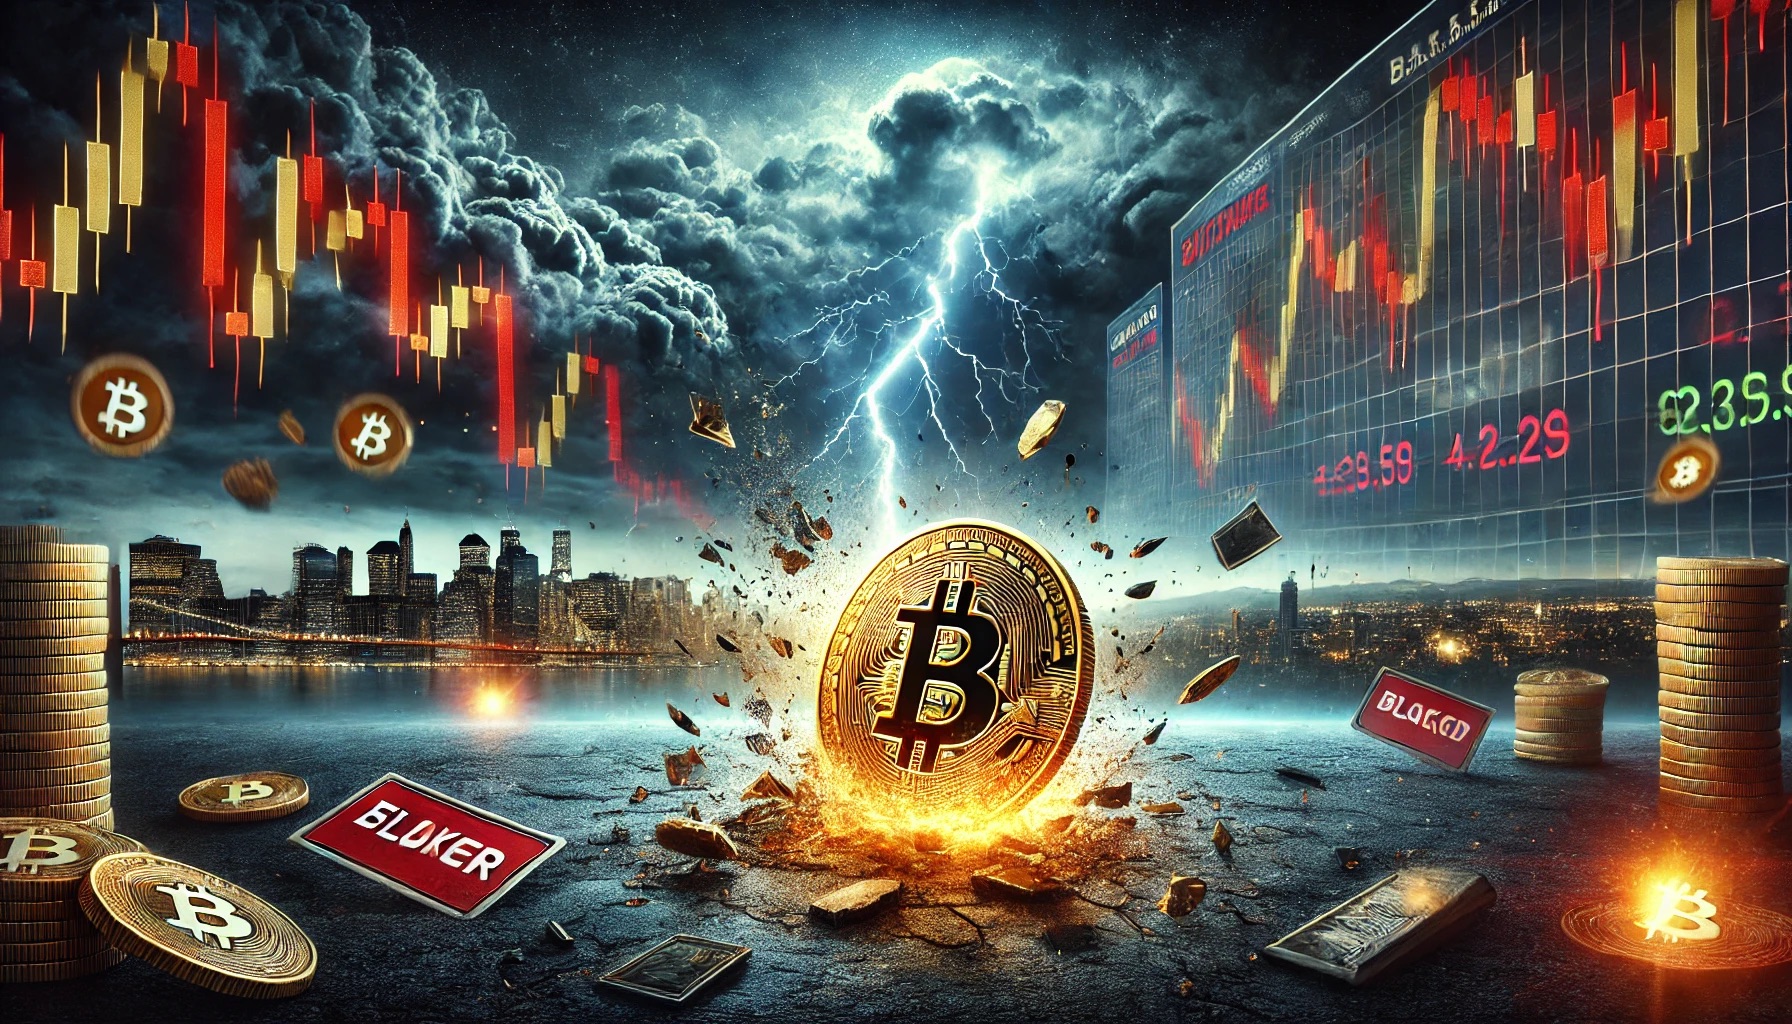 Bitcoin crash